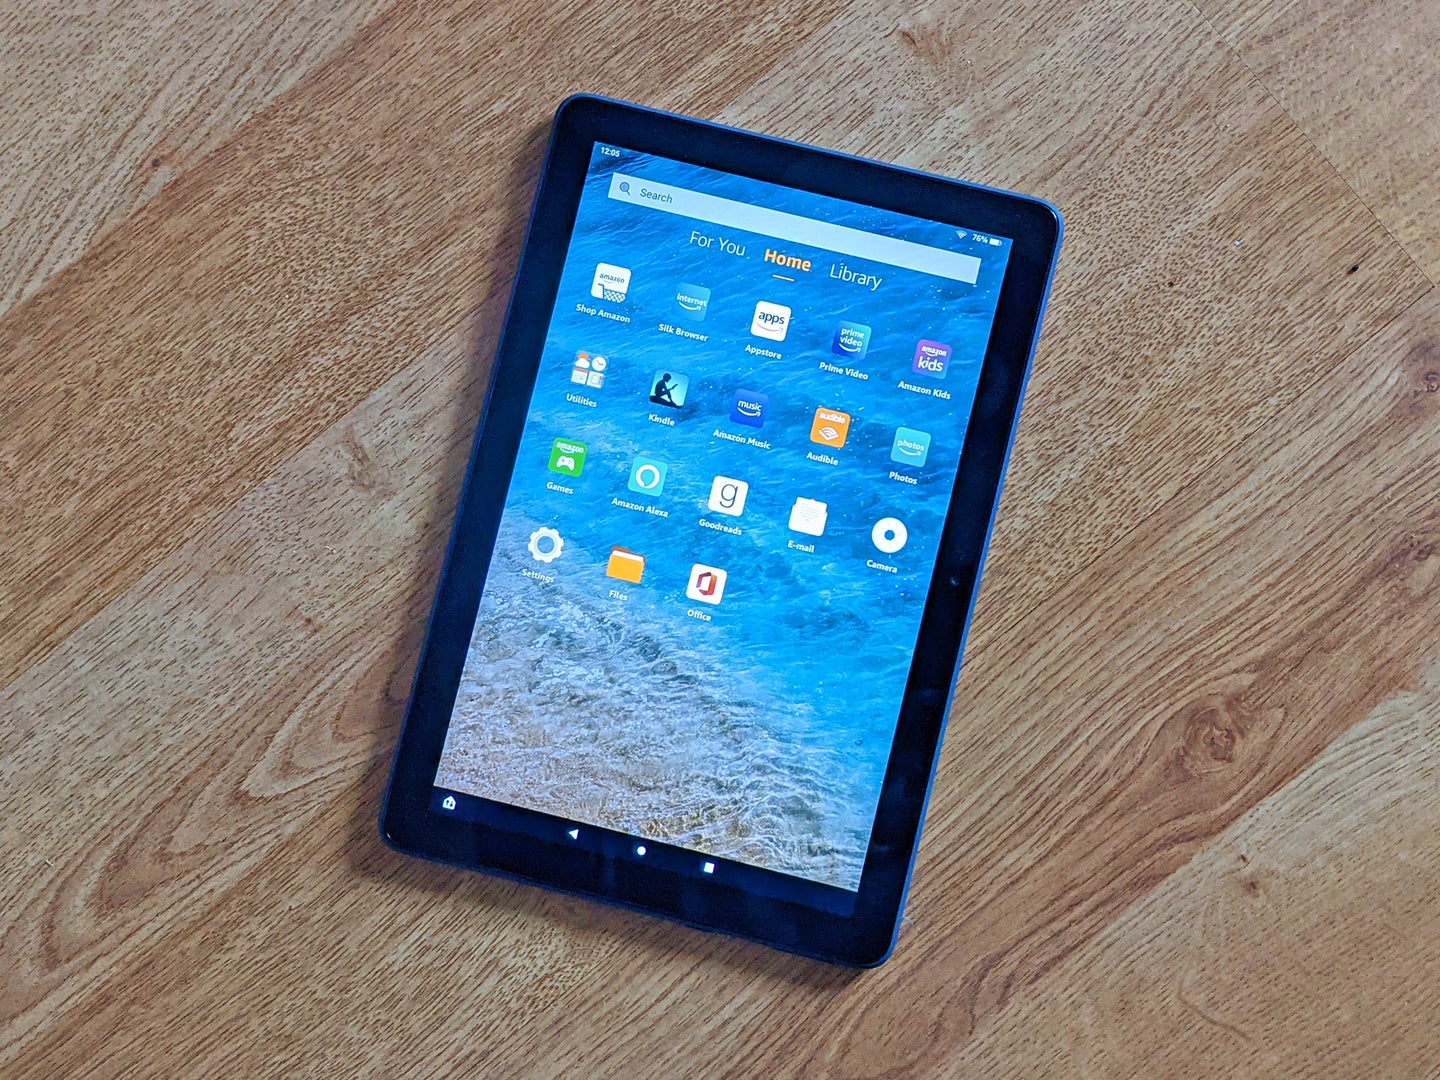 An Amazon Fire HD tablet on a wood floor.